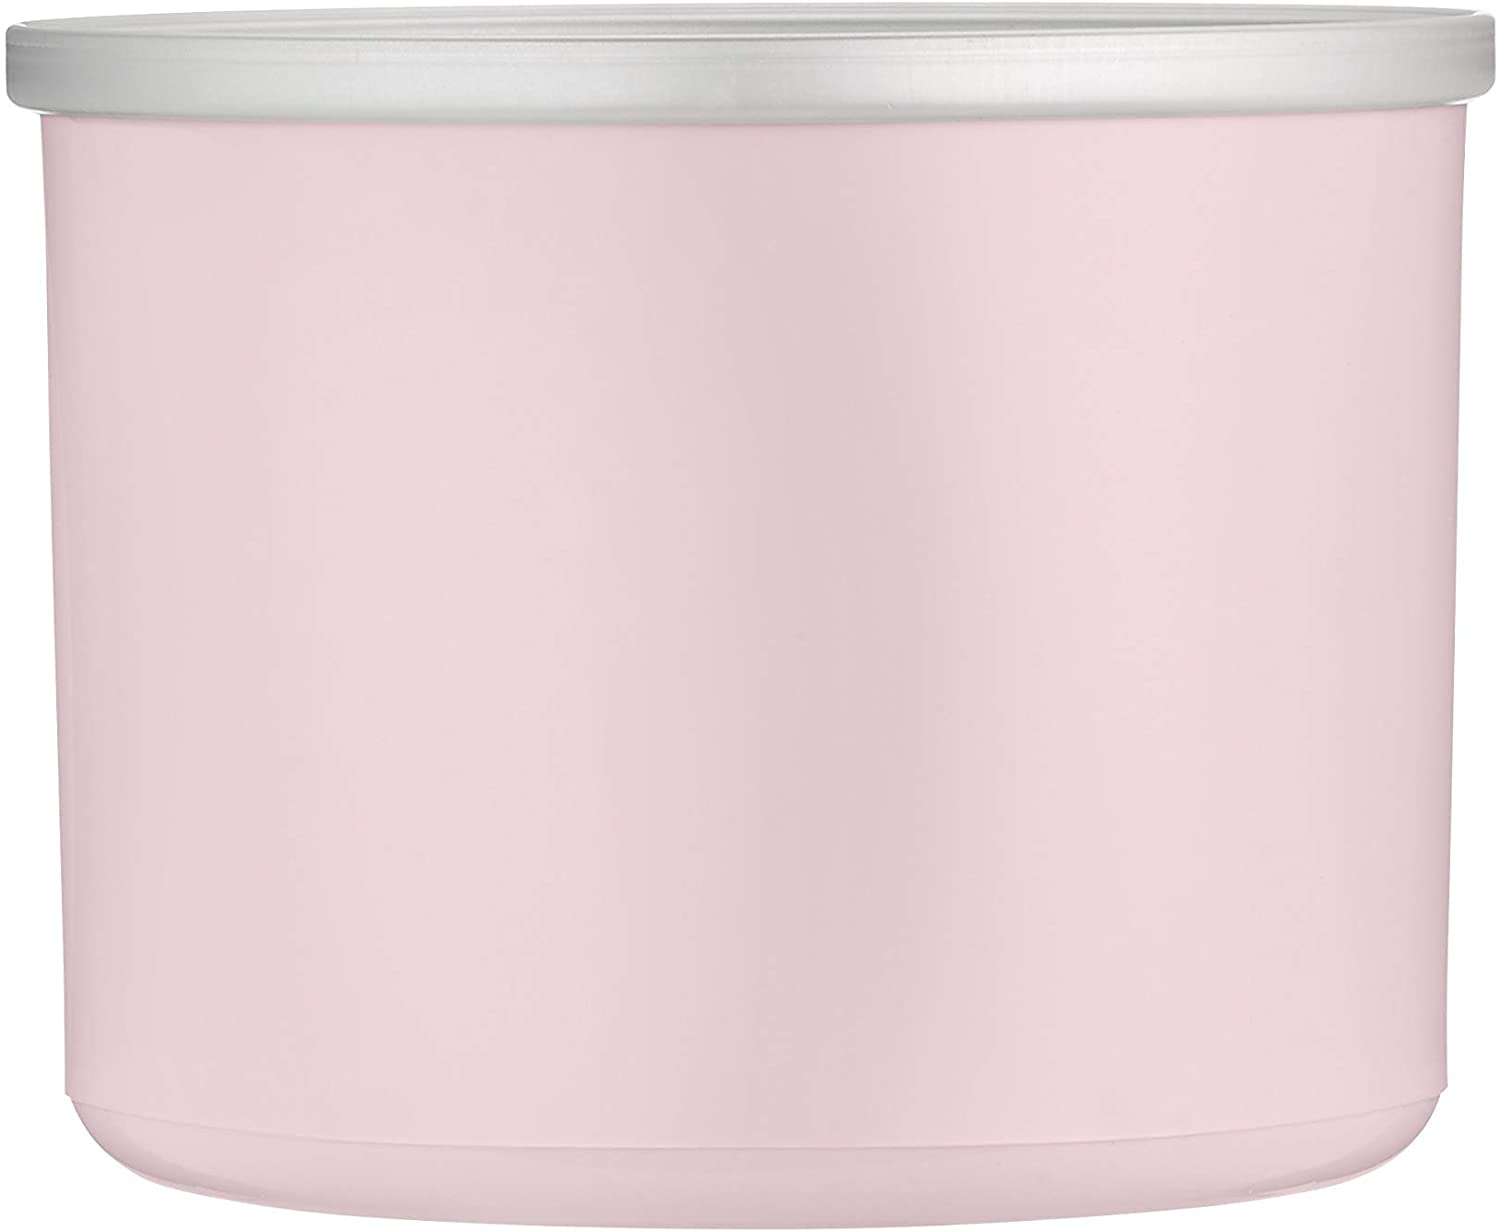 Cuisinart ICE-21PKFR Frozen Yogurt - Ice Cream & Sorbet Maker, Pink - Certified Refurbished